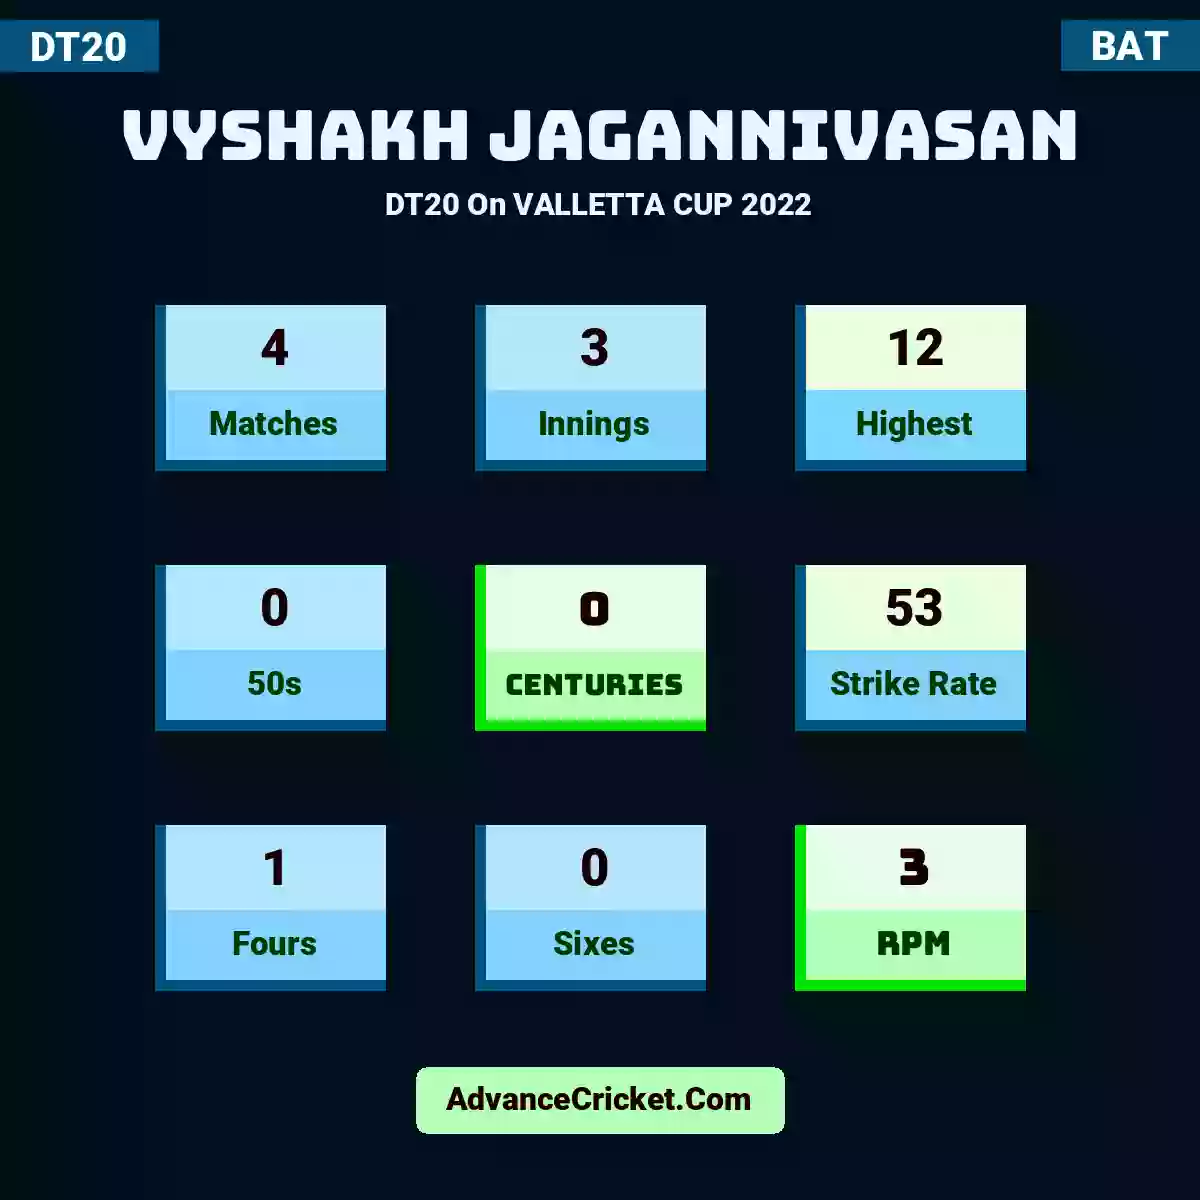 Vyshakh Jagannivasan DT20  On VALLETTA CUP 2022, Vyshakh Jagannivasan played 4 matches, scored 12 runs as highest, 0 half-centuries, and 0 centuries, with a strike rate of 53. V.Jagannivasan hit 1 fours and 0 sixes, with an RPM of 3.